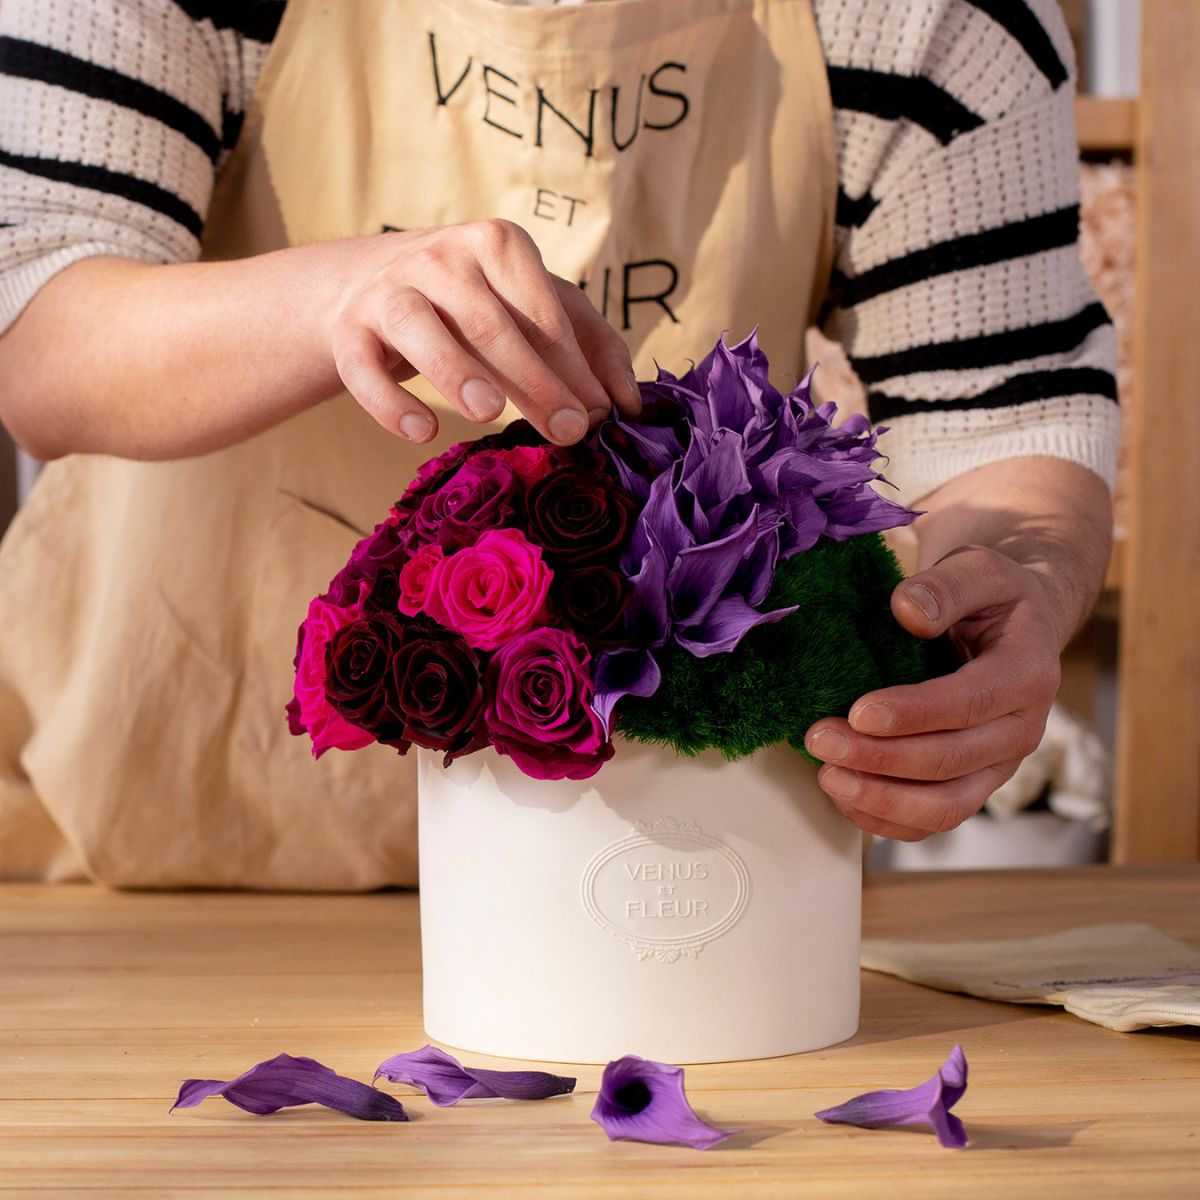 Hands arrange purple calla lily mixed eternity arrangement - Venus et Fleur